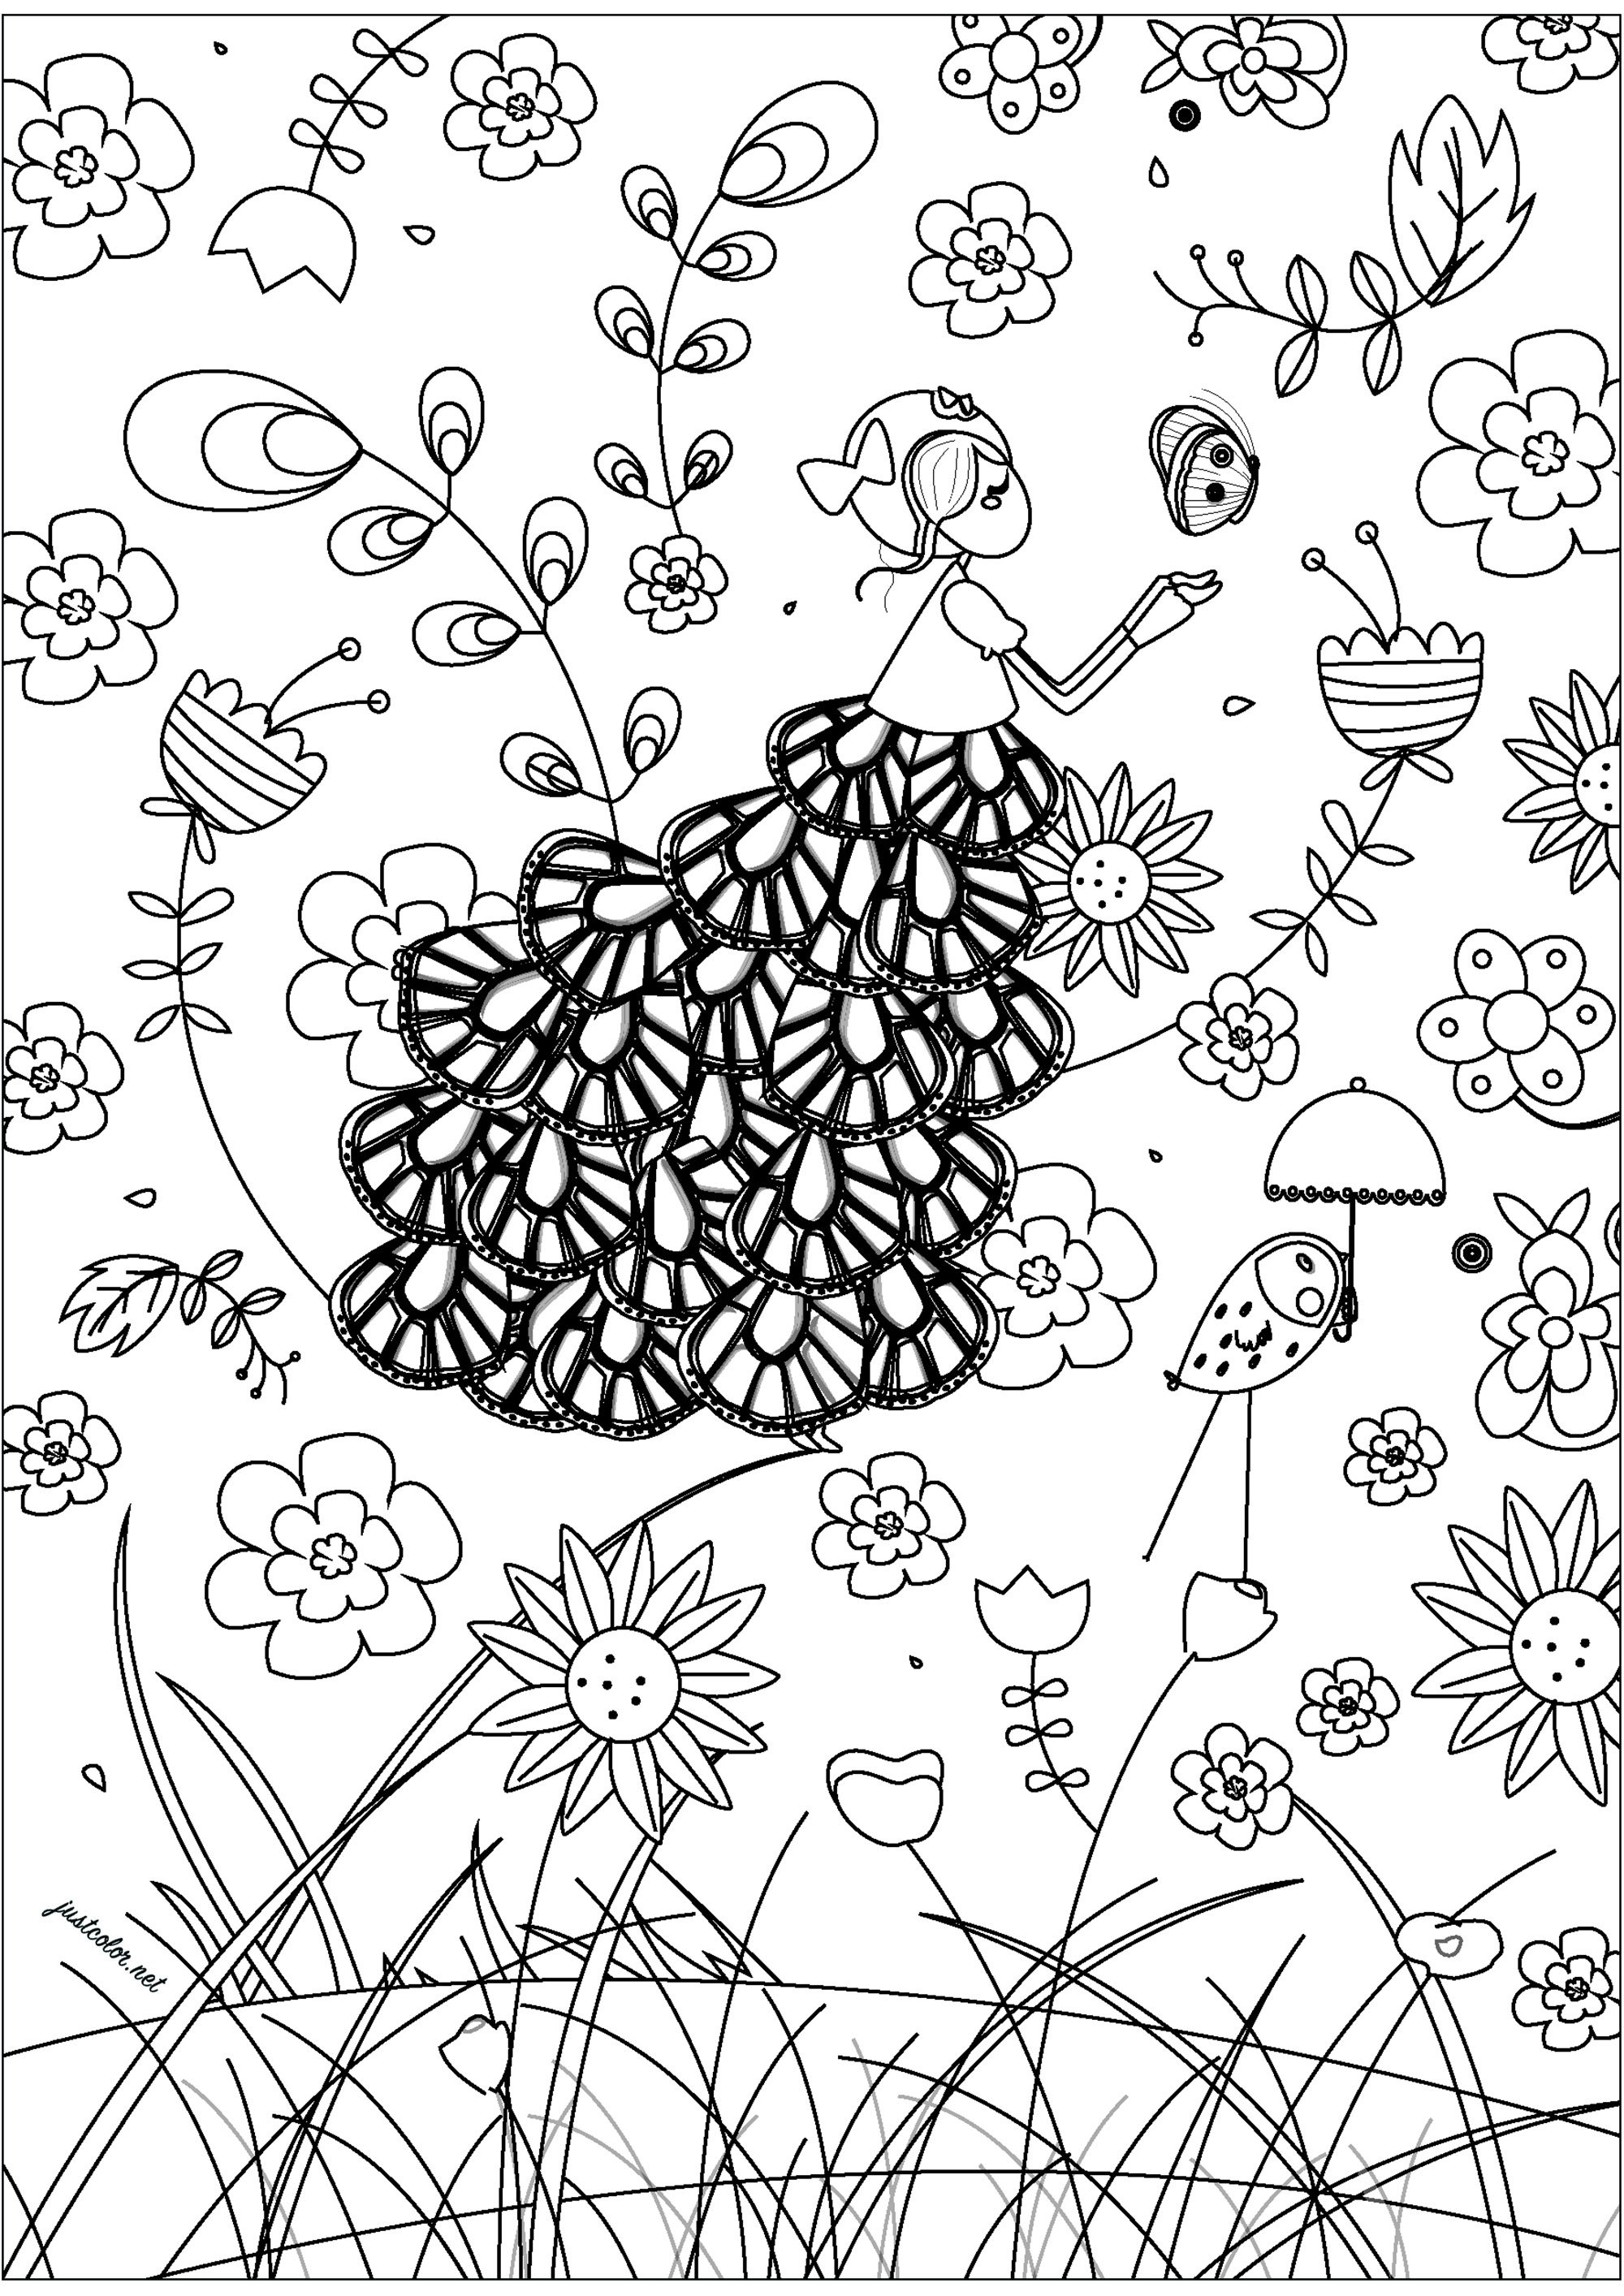 Hada flotando en medio de las flores del campo. Esta página para colorear es una invitación a soñar despierto y relajarse. Una elegante hada flota en medio de una variedad de hermosas flores, creando un paisaje encantador.